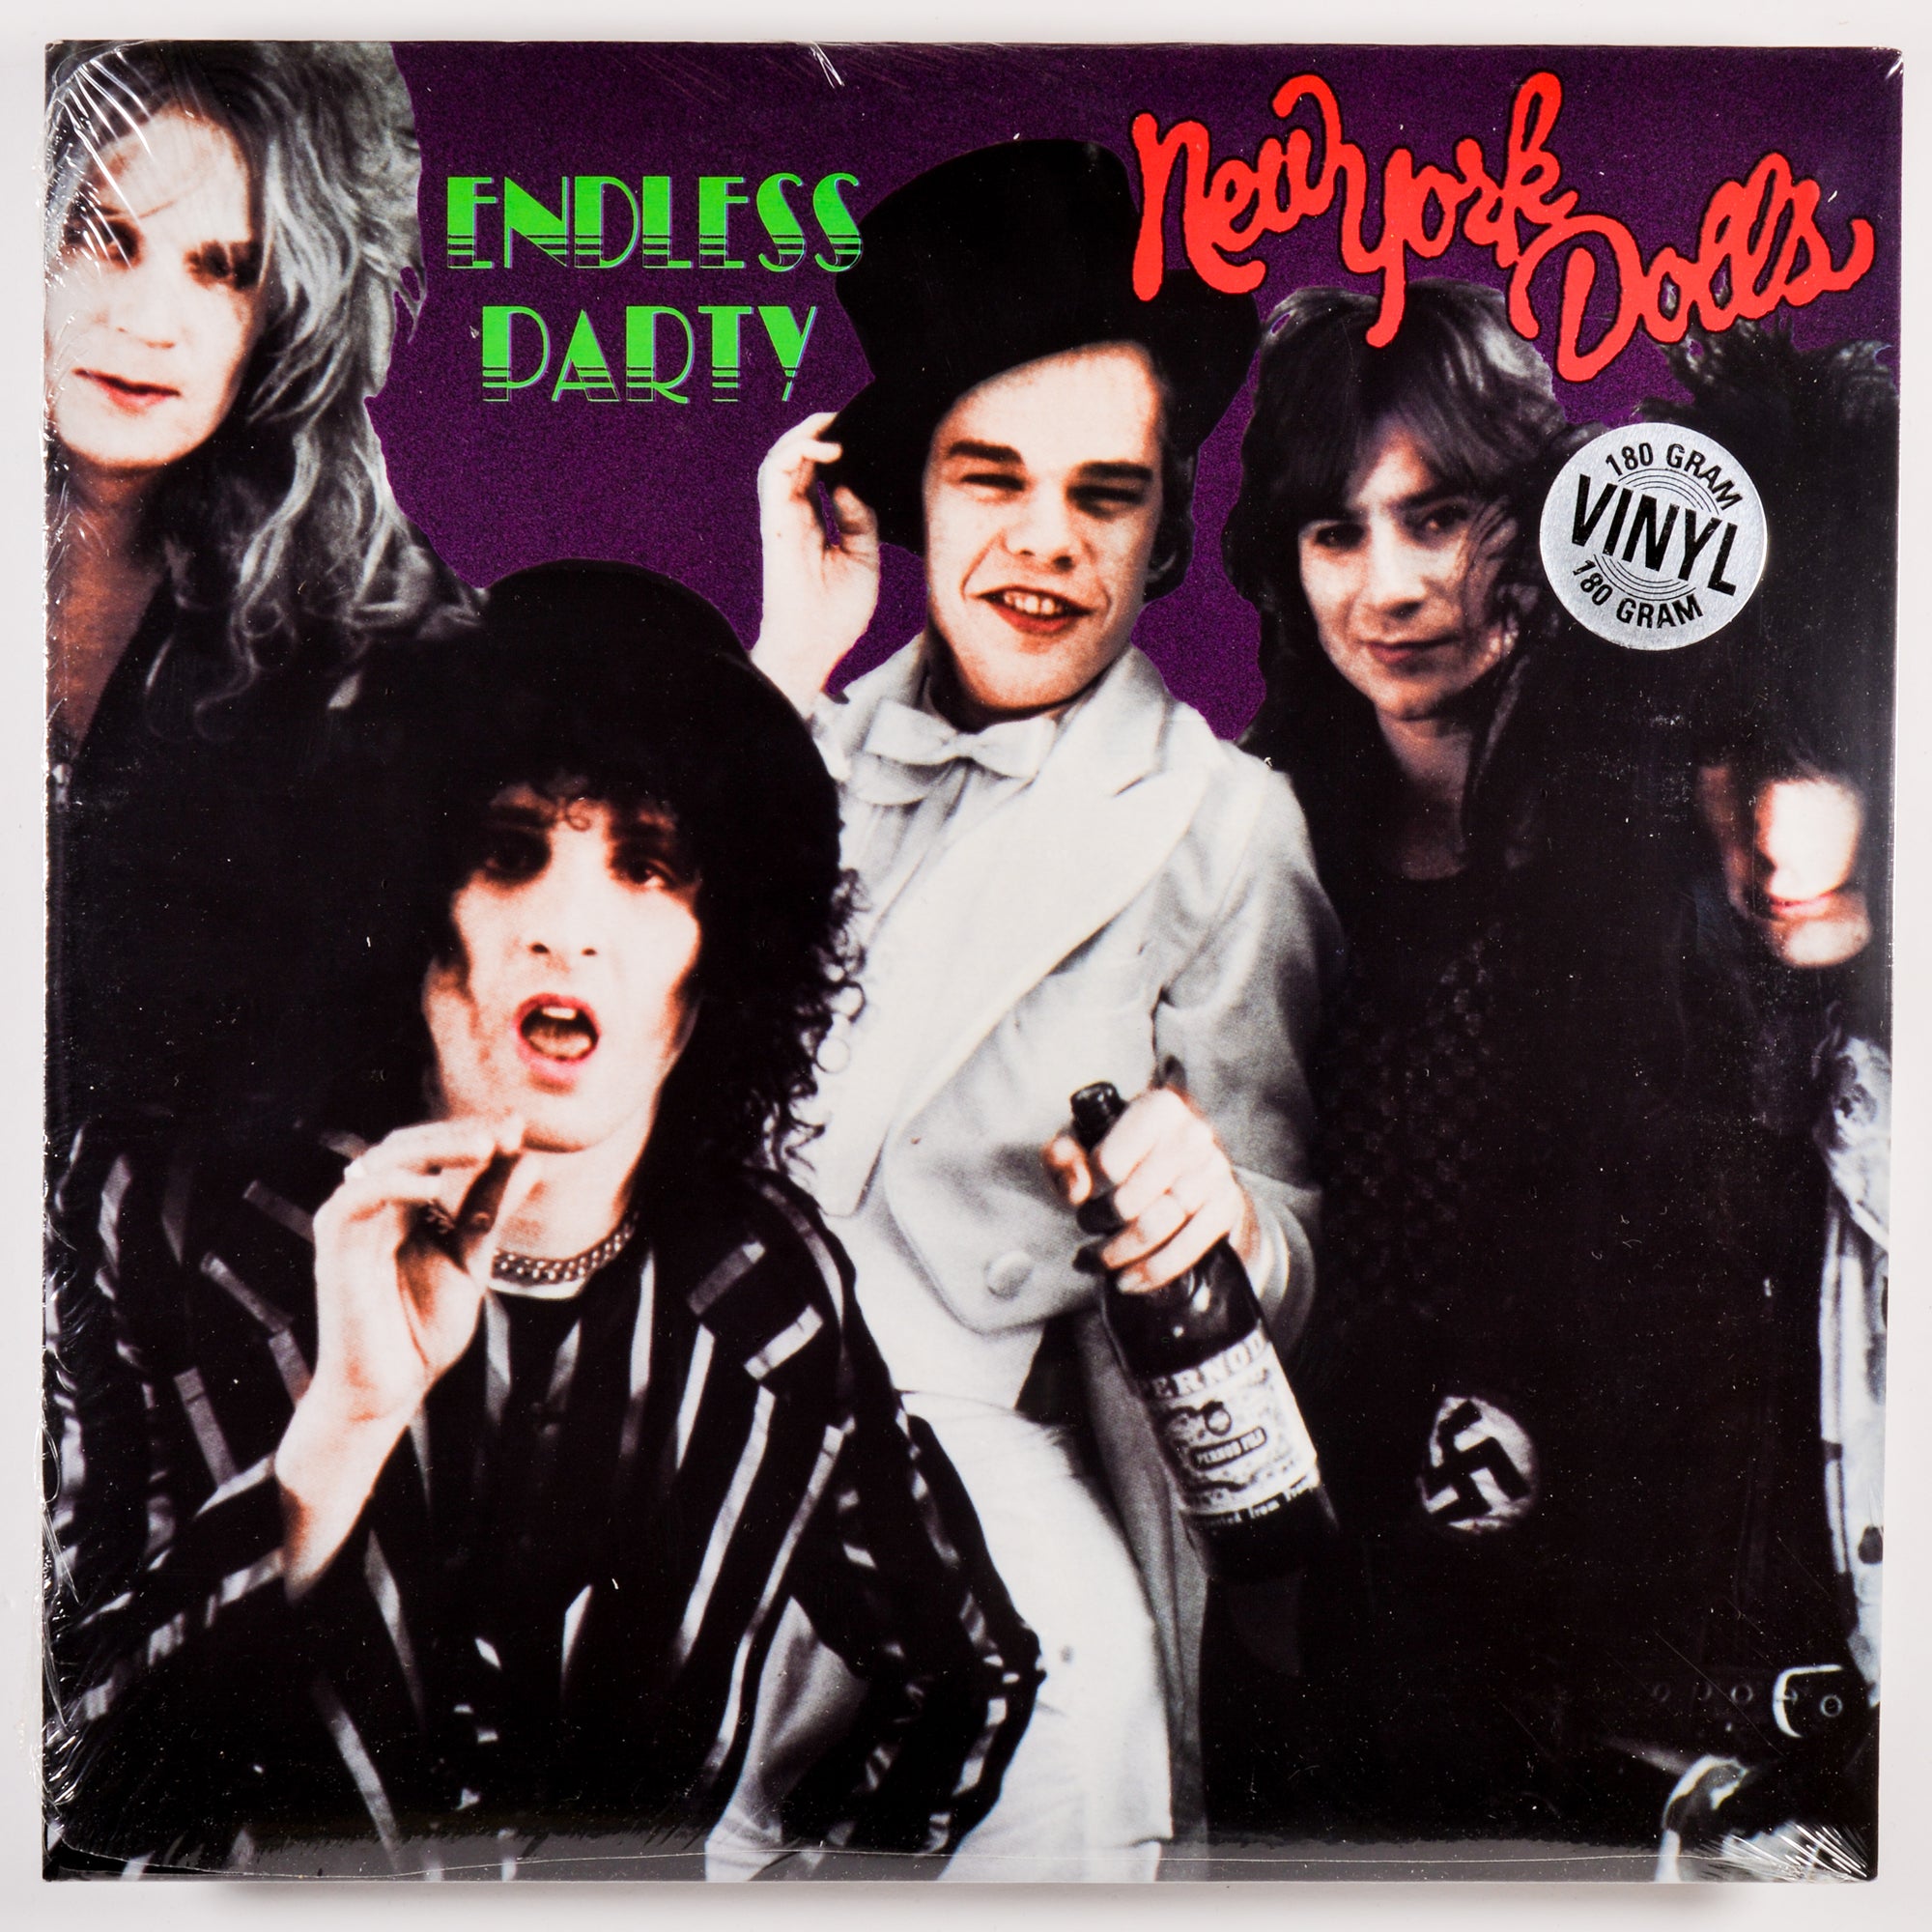 New York Dolls - Endless Party (Vinyl LP)